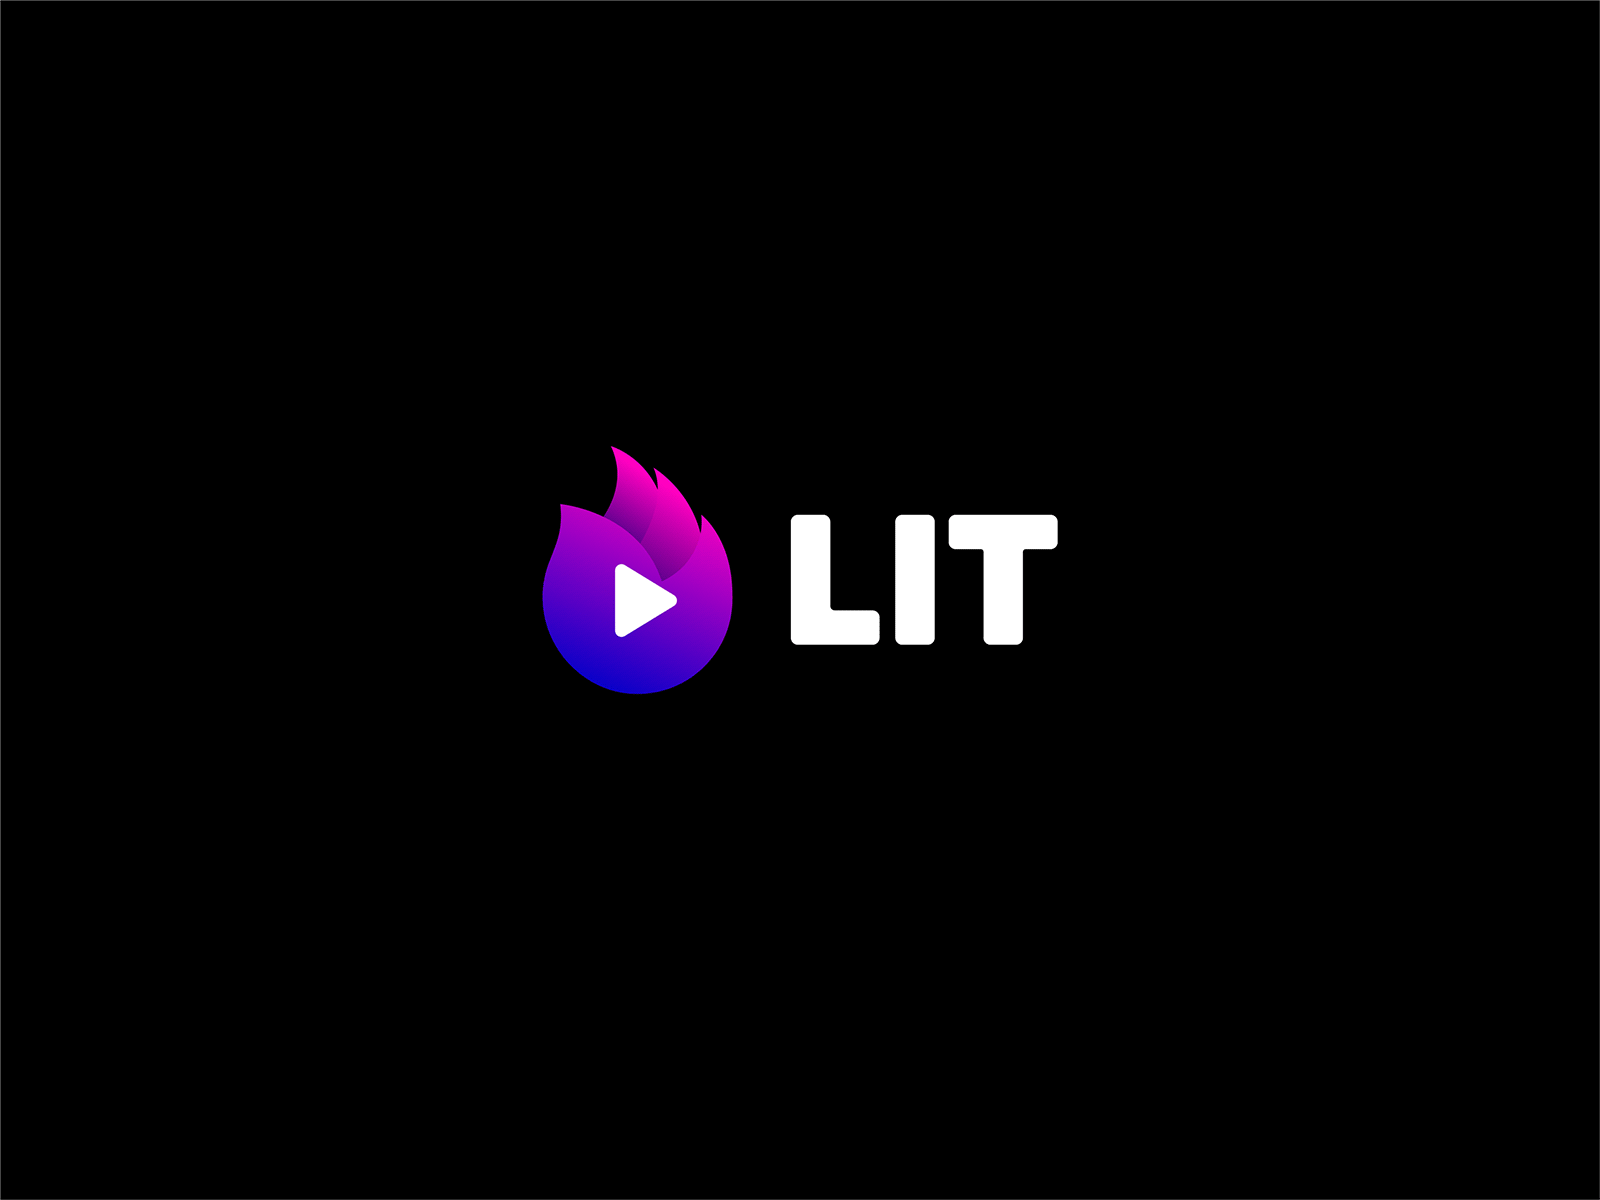 LIT fire logo play videobooks